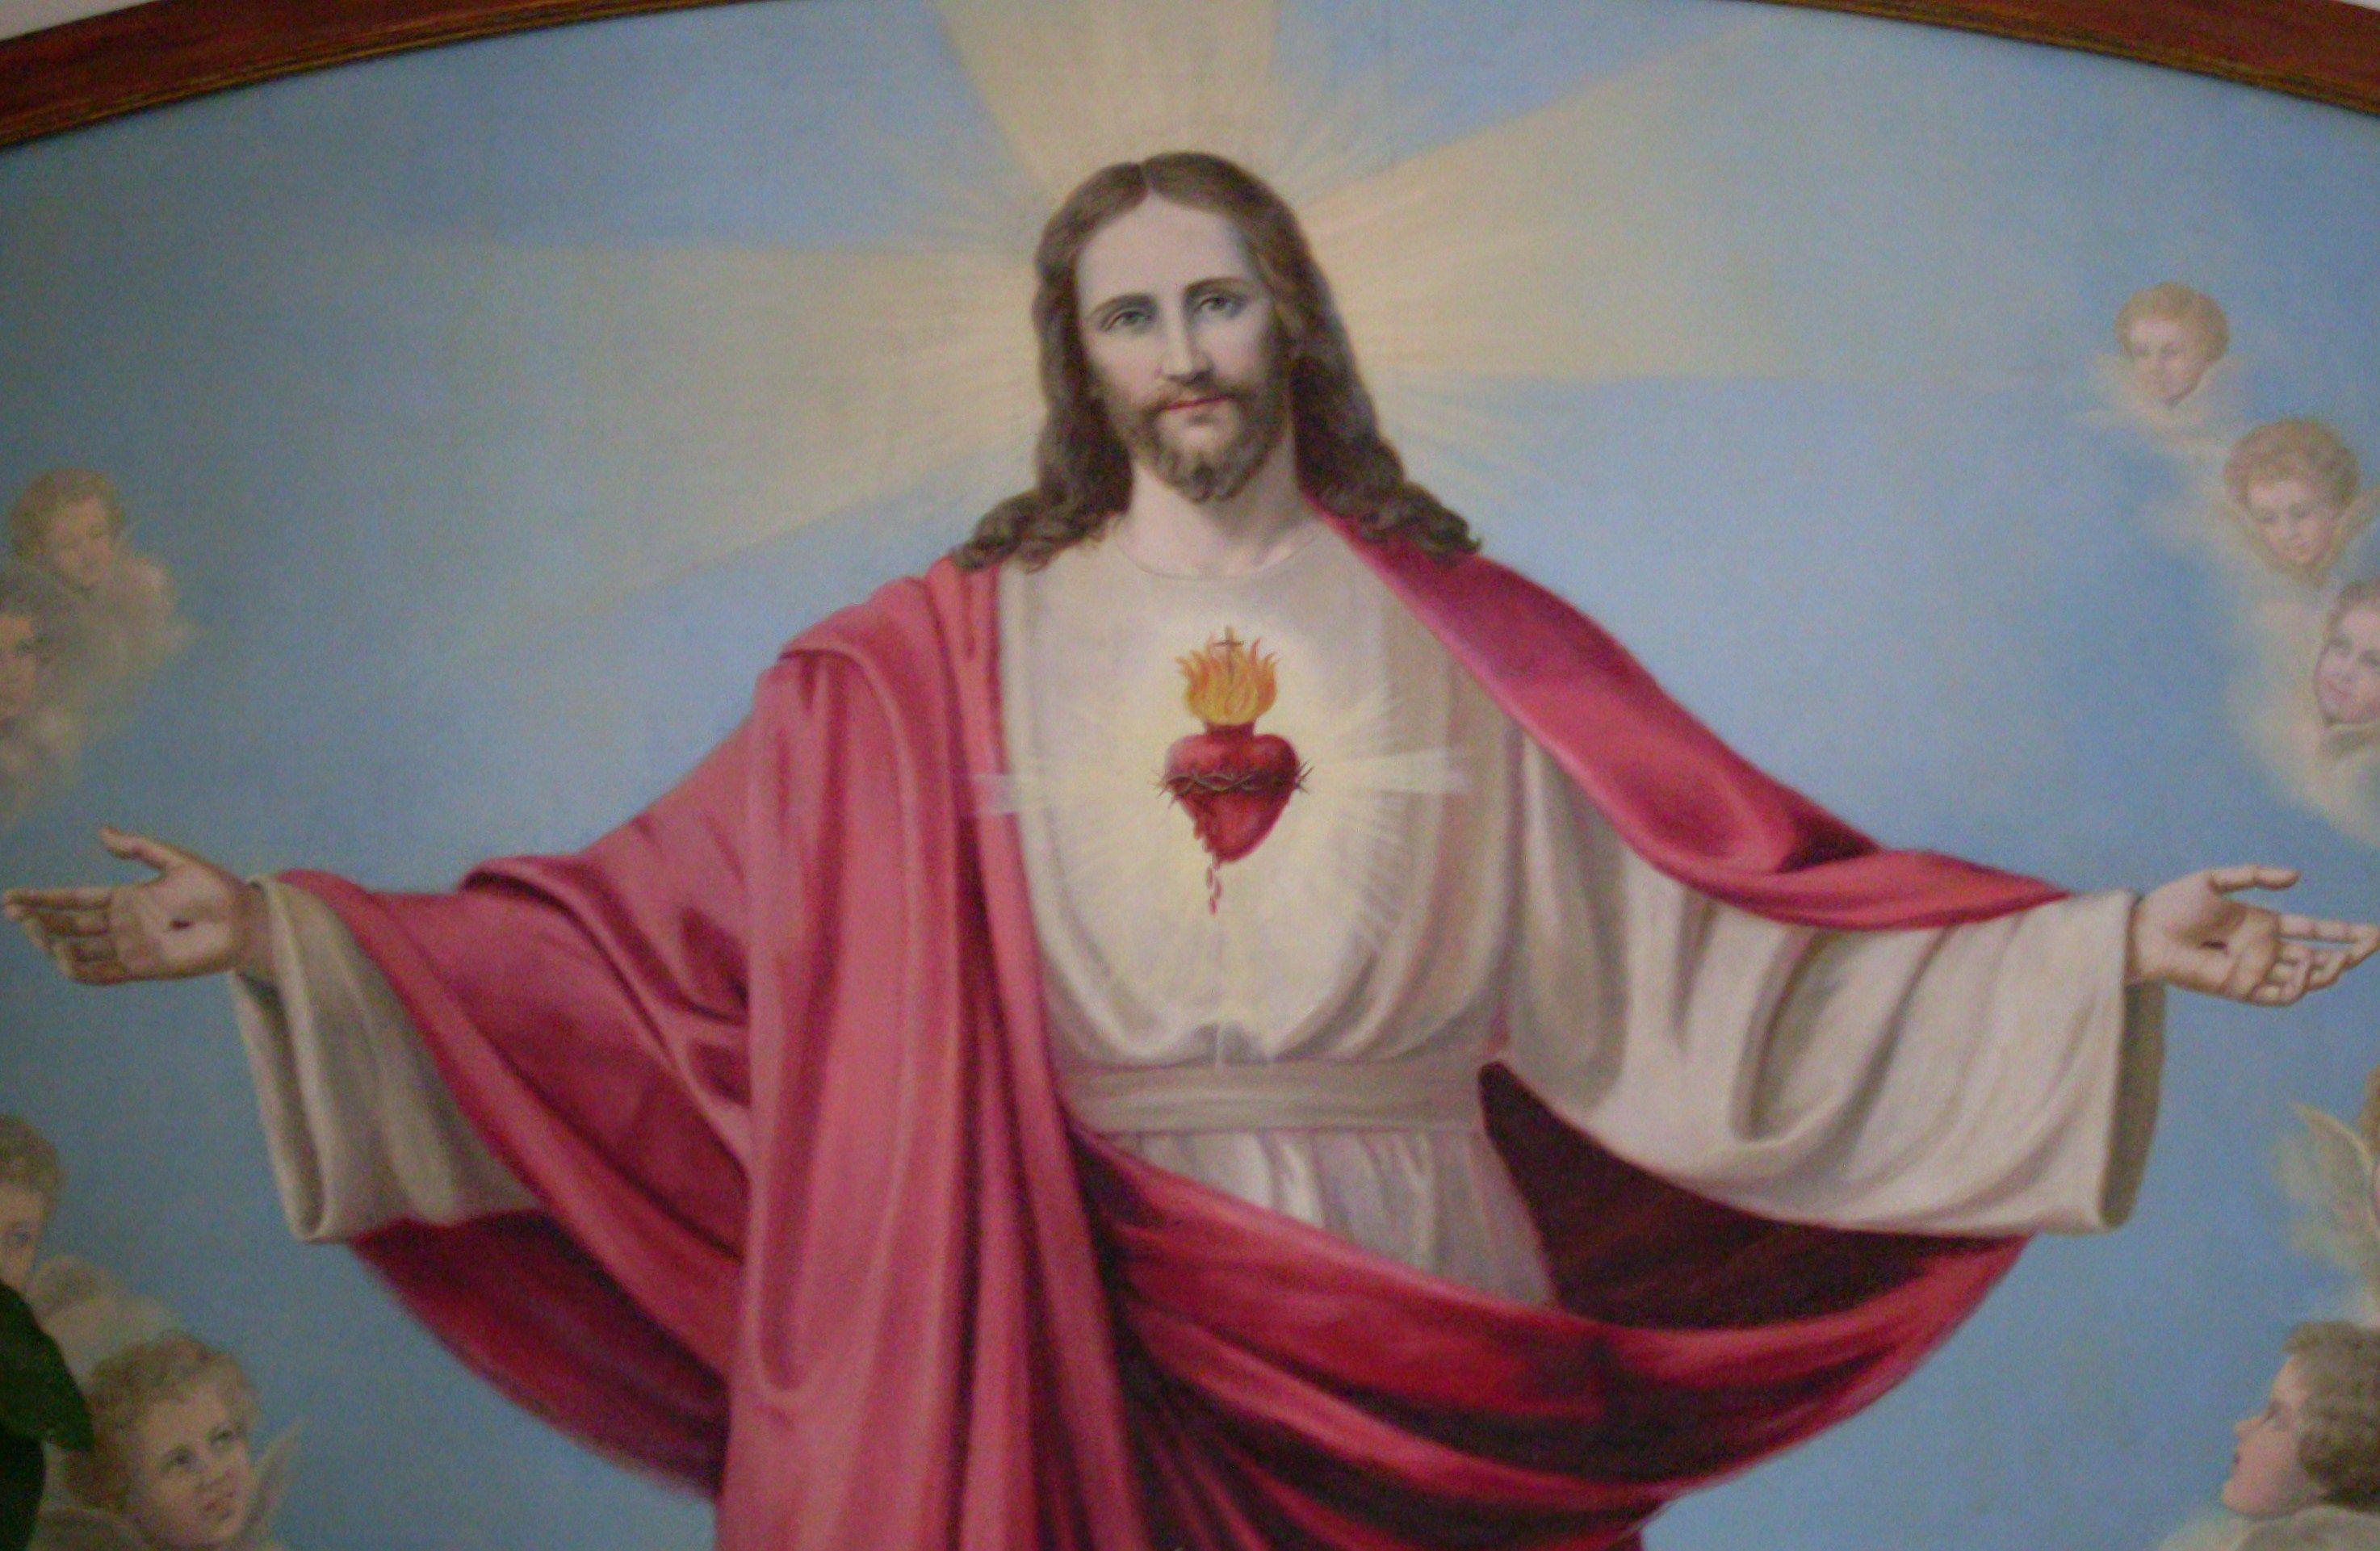  Sacred Heart Jesus Mobile Wallpaper HD Download  MyGodImages